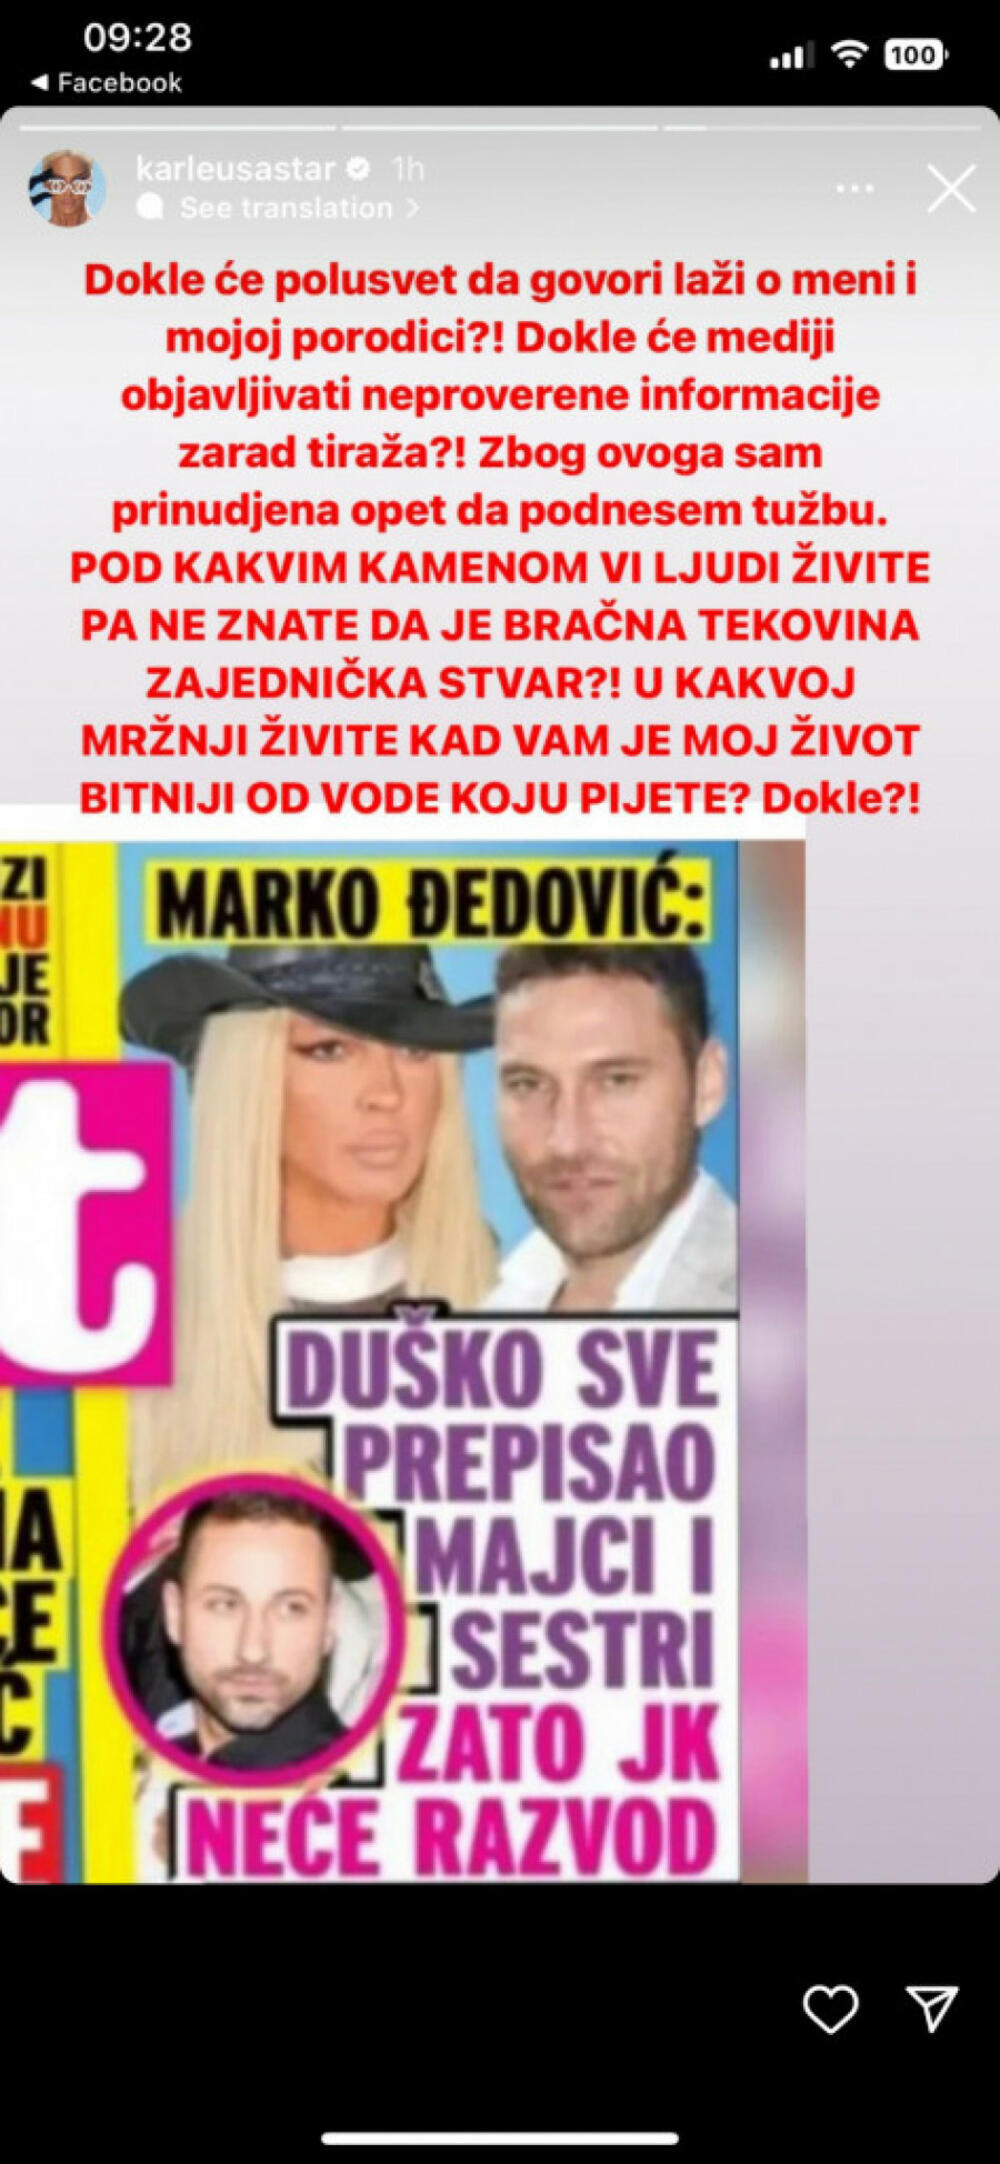 Jelena Karleuša prokomentarisala medijske navode da će Duško imovinu prepisati majci i sestri